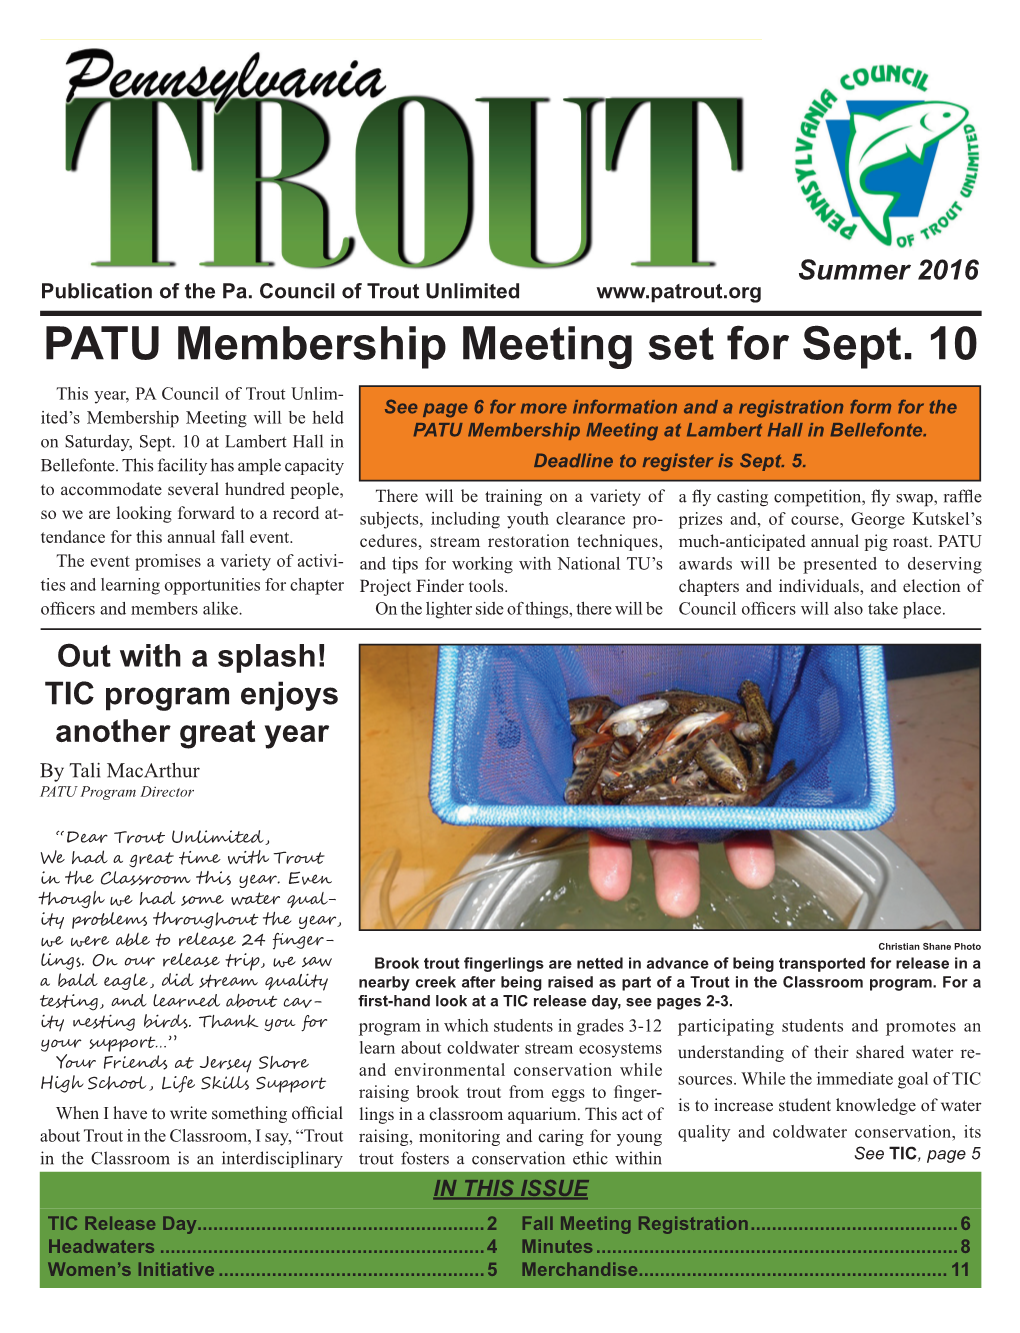 PATU Membership Meeting Set for Sept. 10